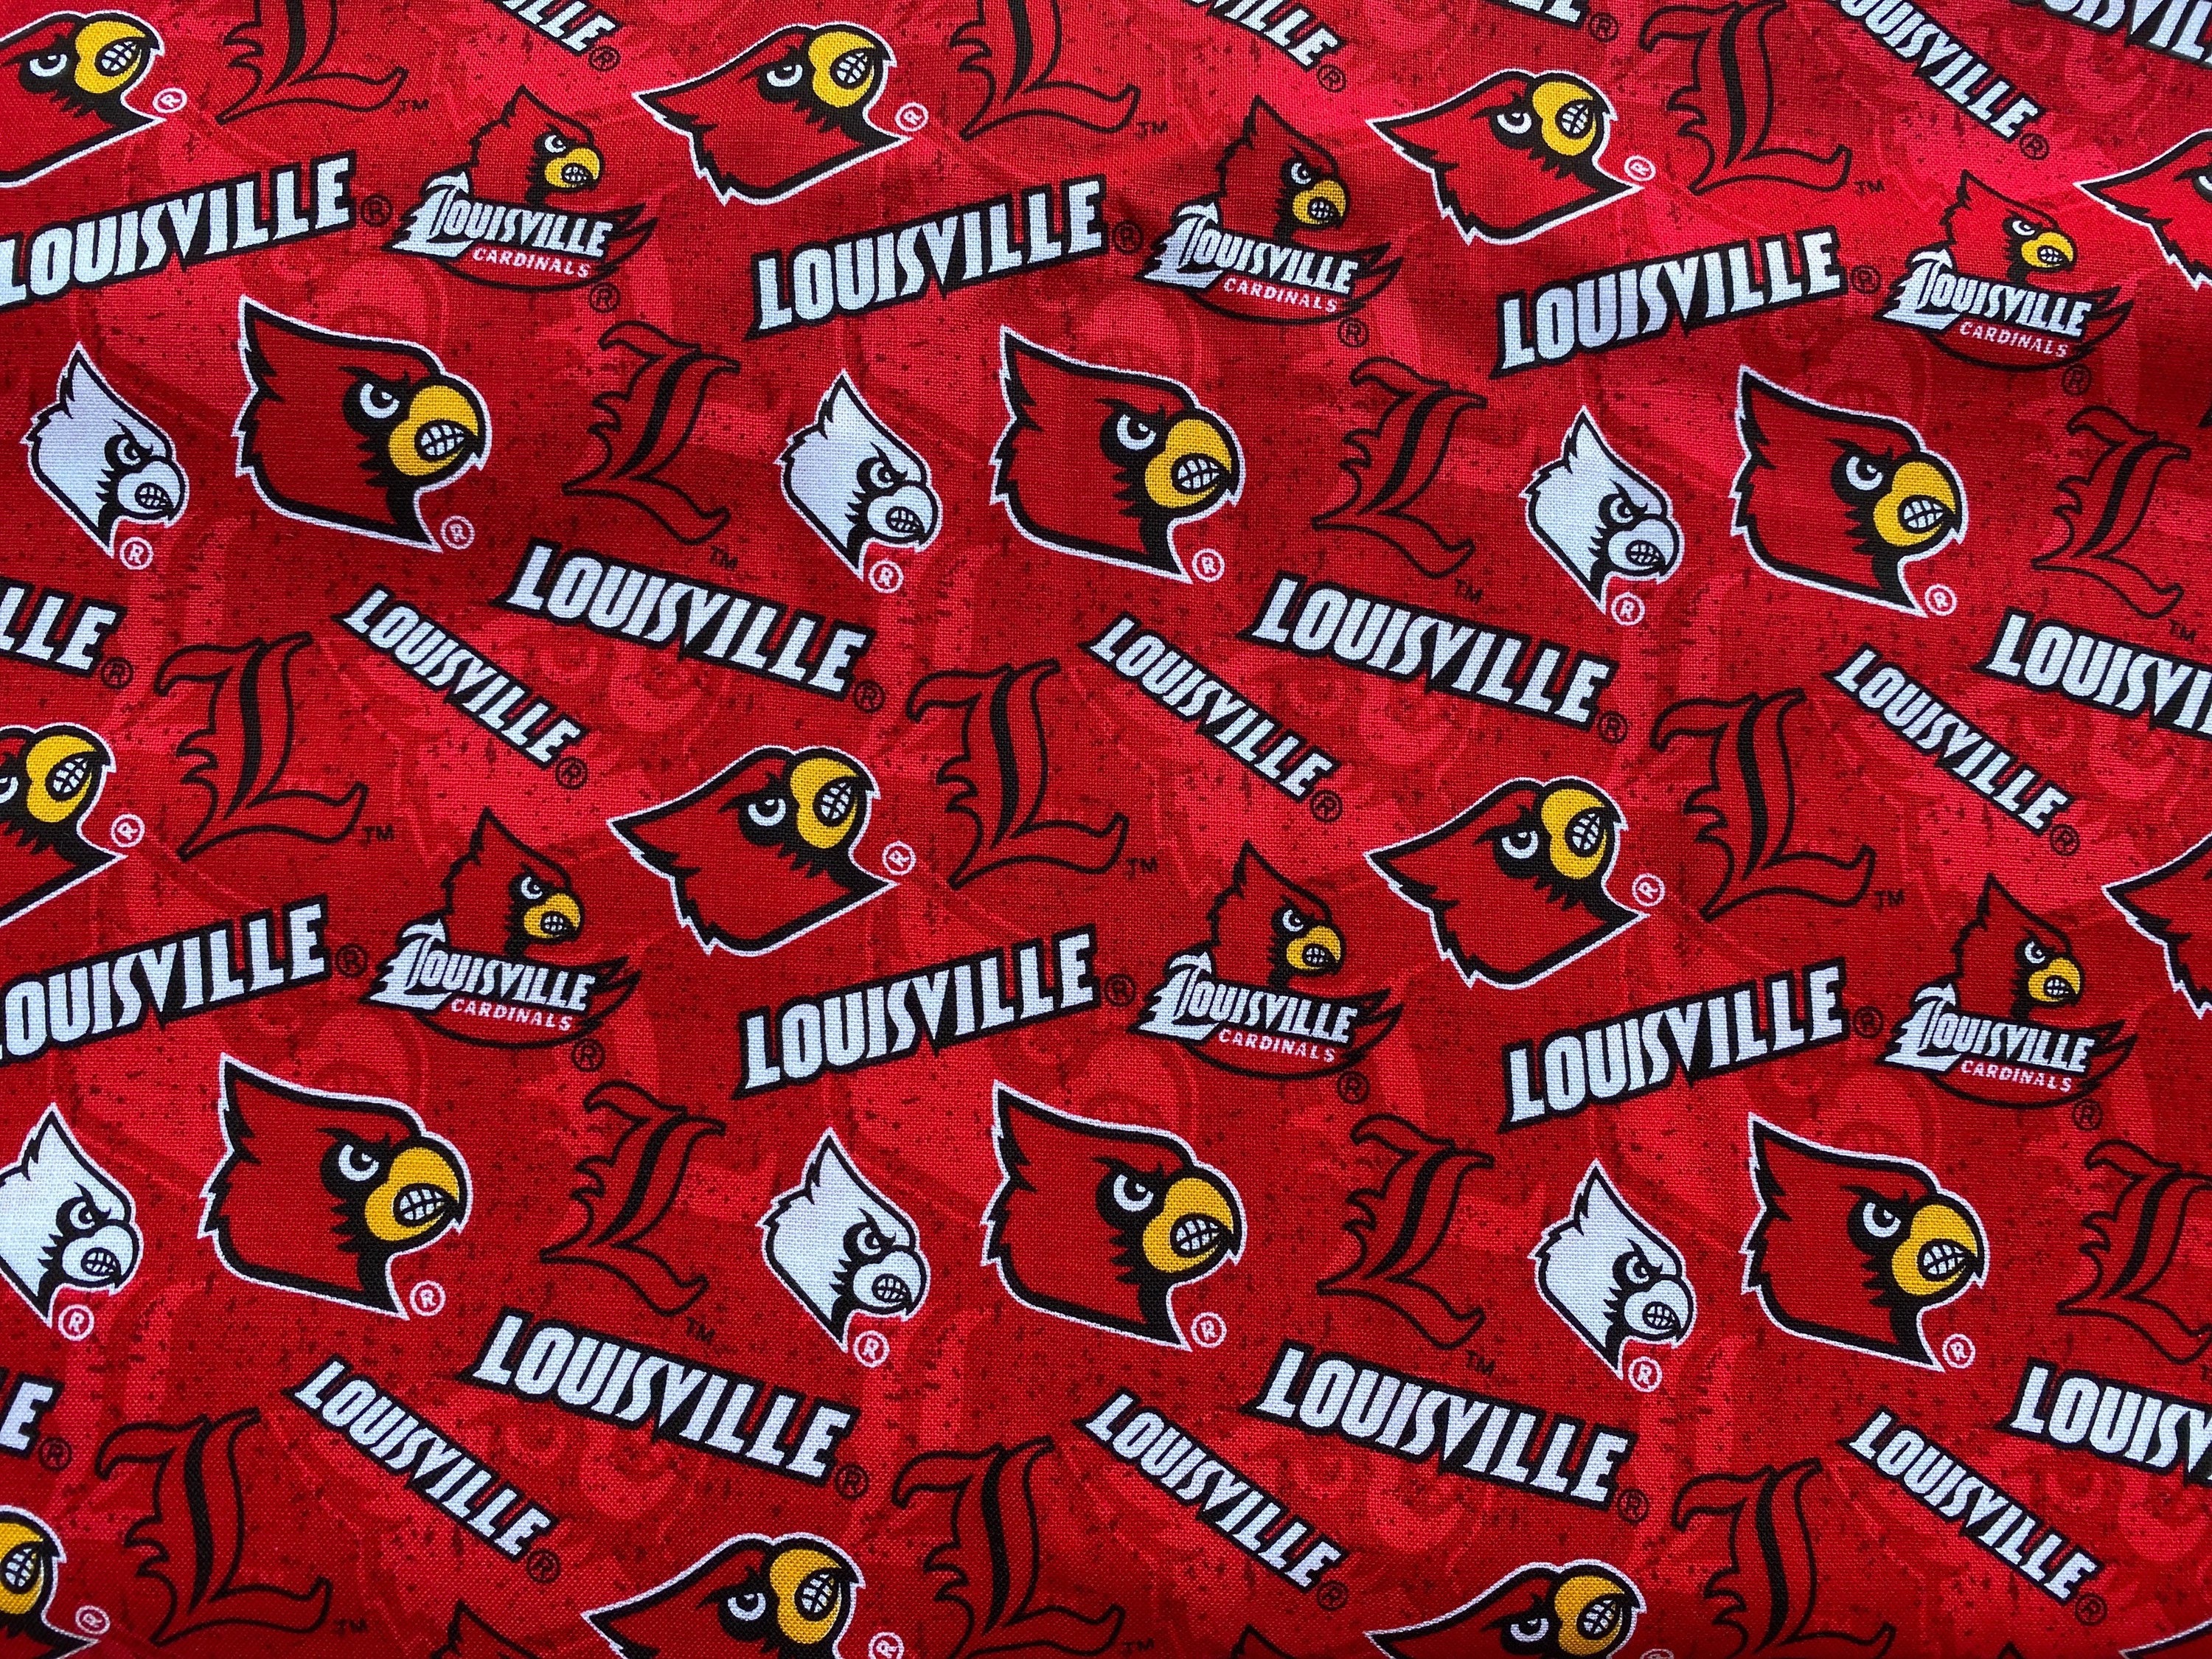 Louisville Cardinals Cotton fabric 18 x 21 fat quarter